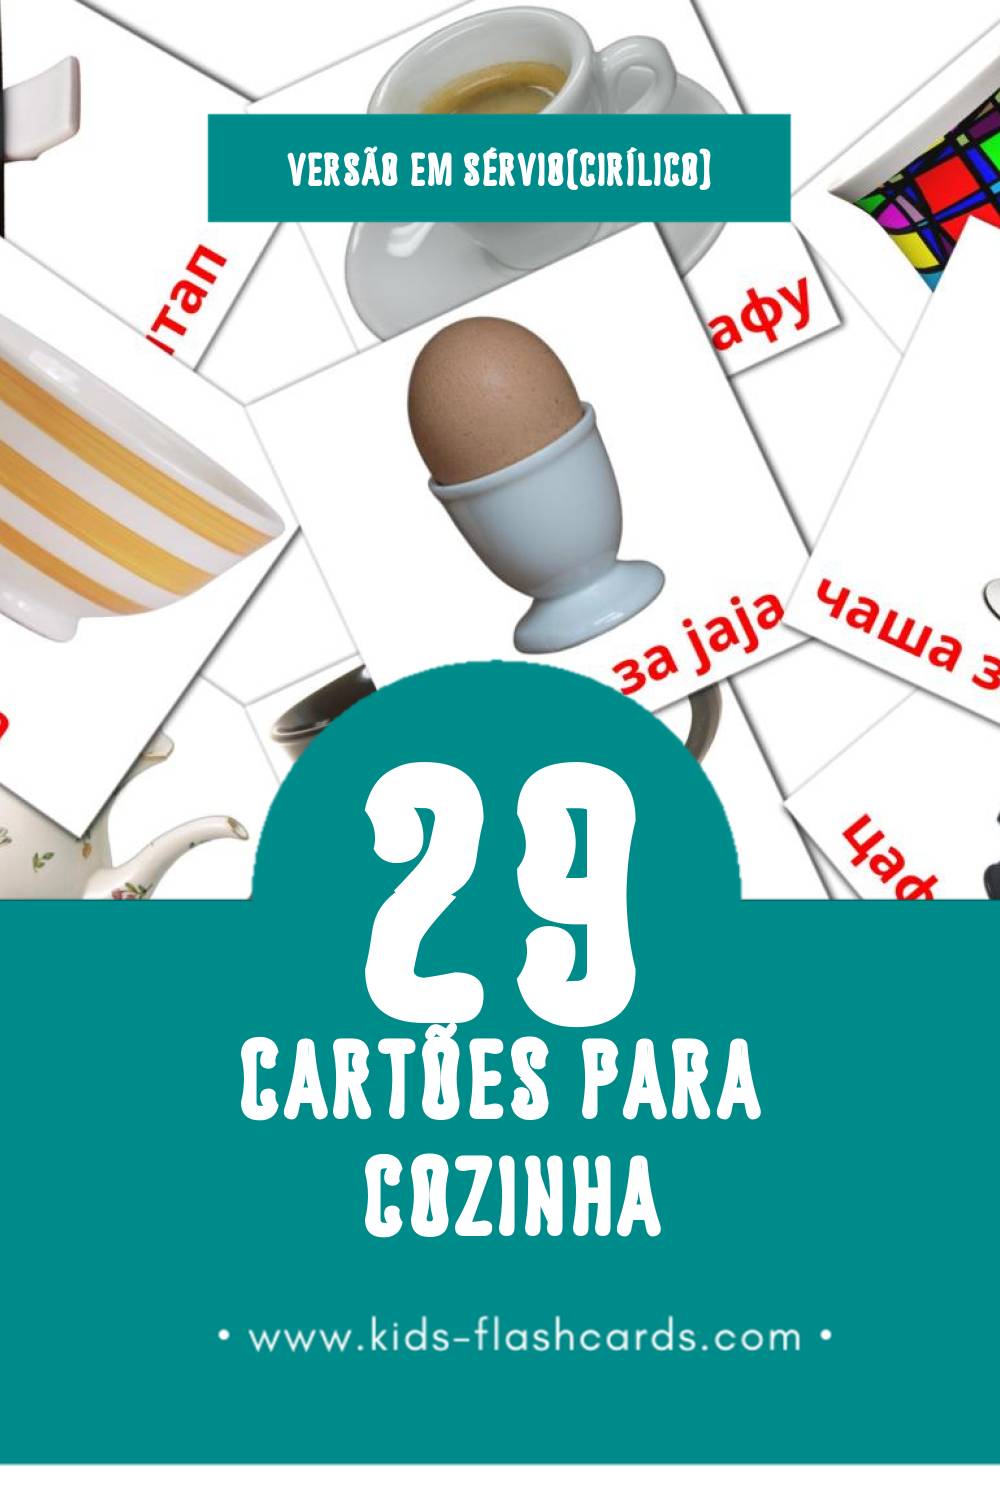 Flashcards de у кухињи Visuais para Toddlers (60 cartões em Sérvio(cirílico))